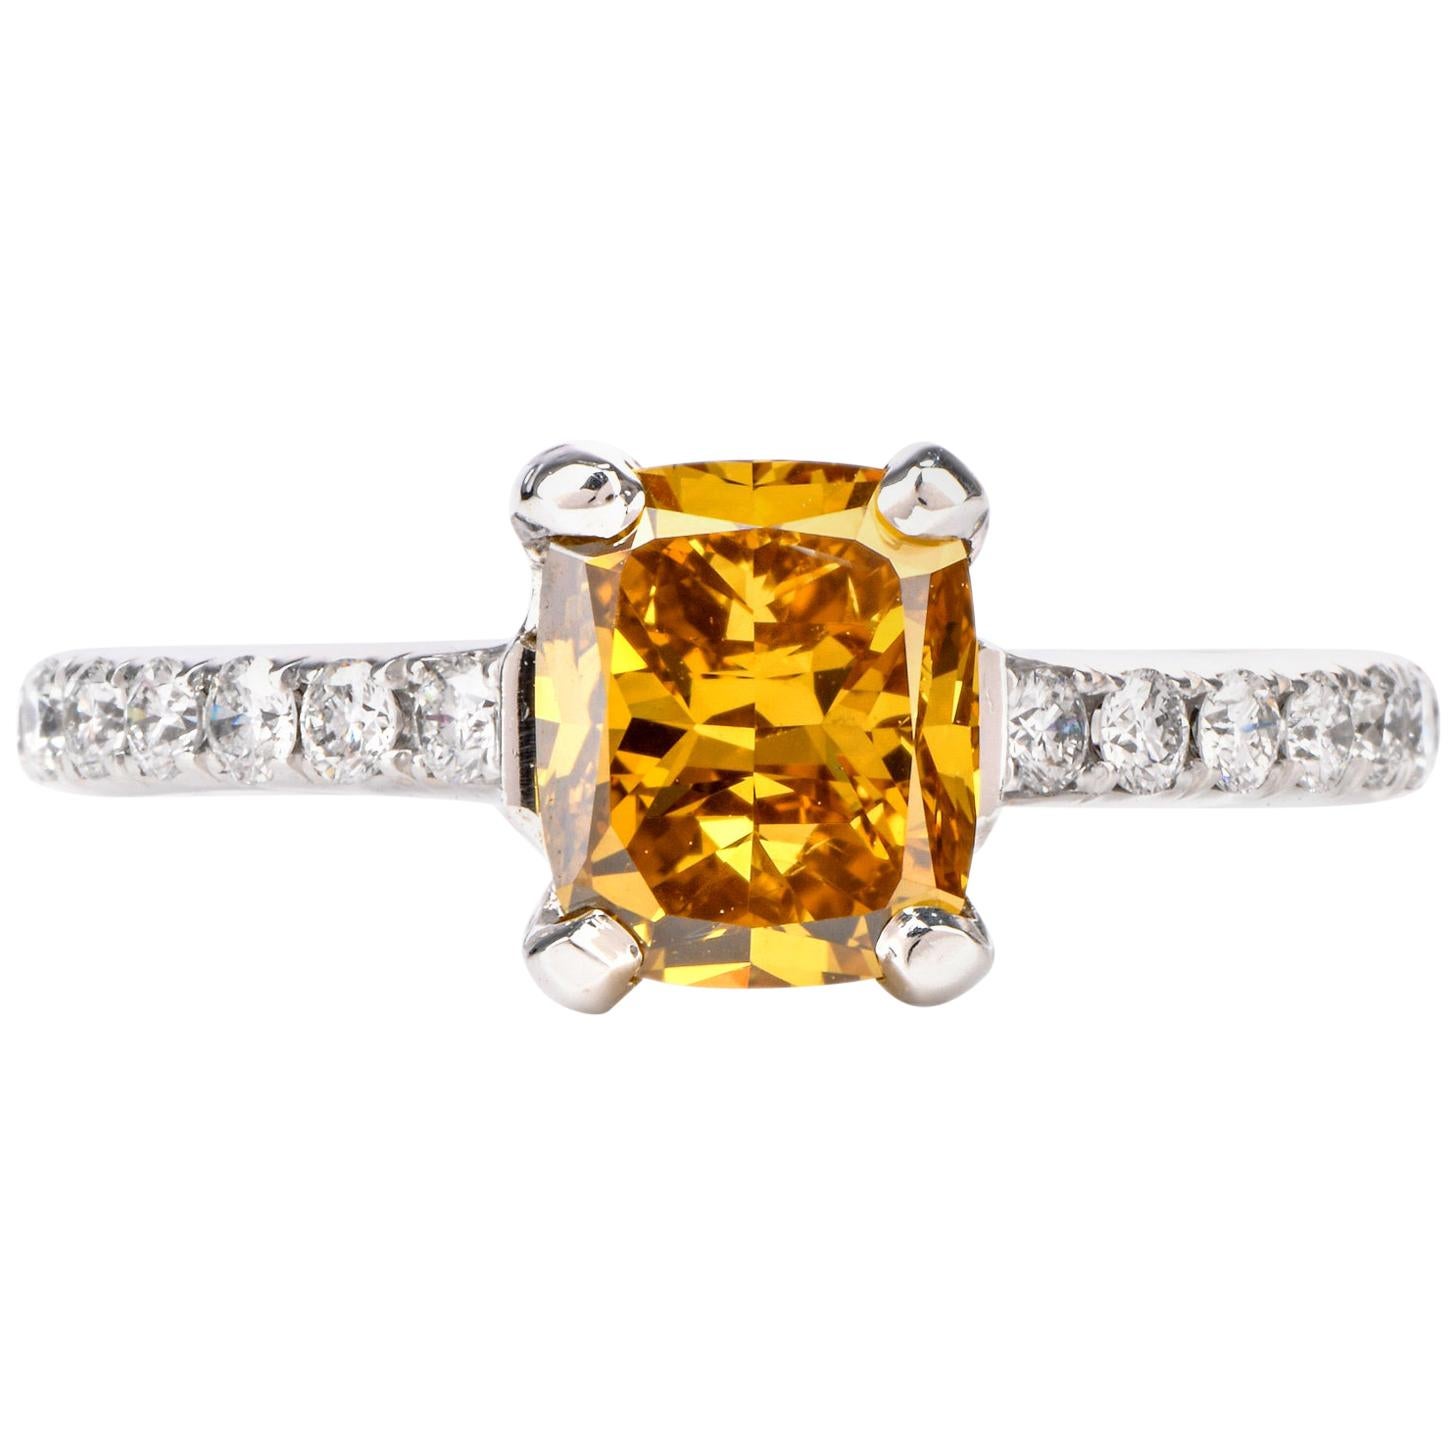 Natural Fancy Deep Orange-Yellow GIA Diamond 18 Karat Engagement Ring